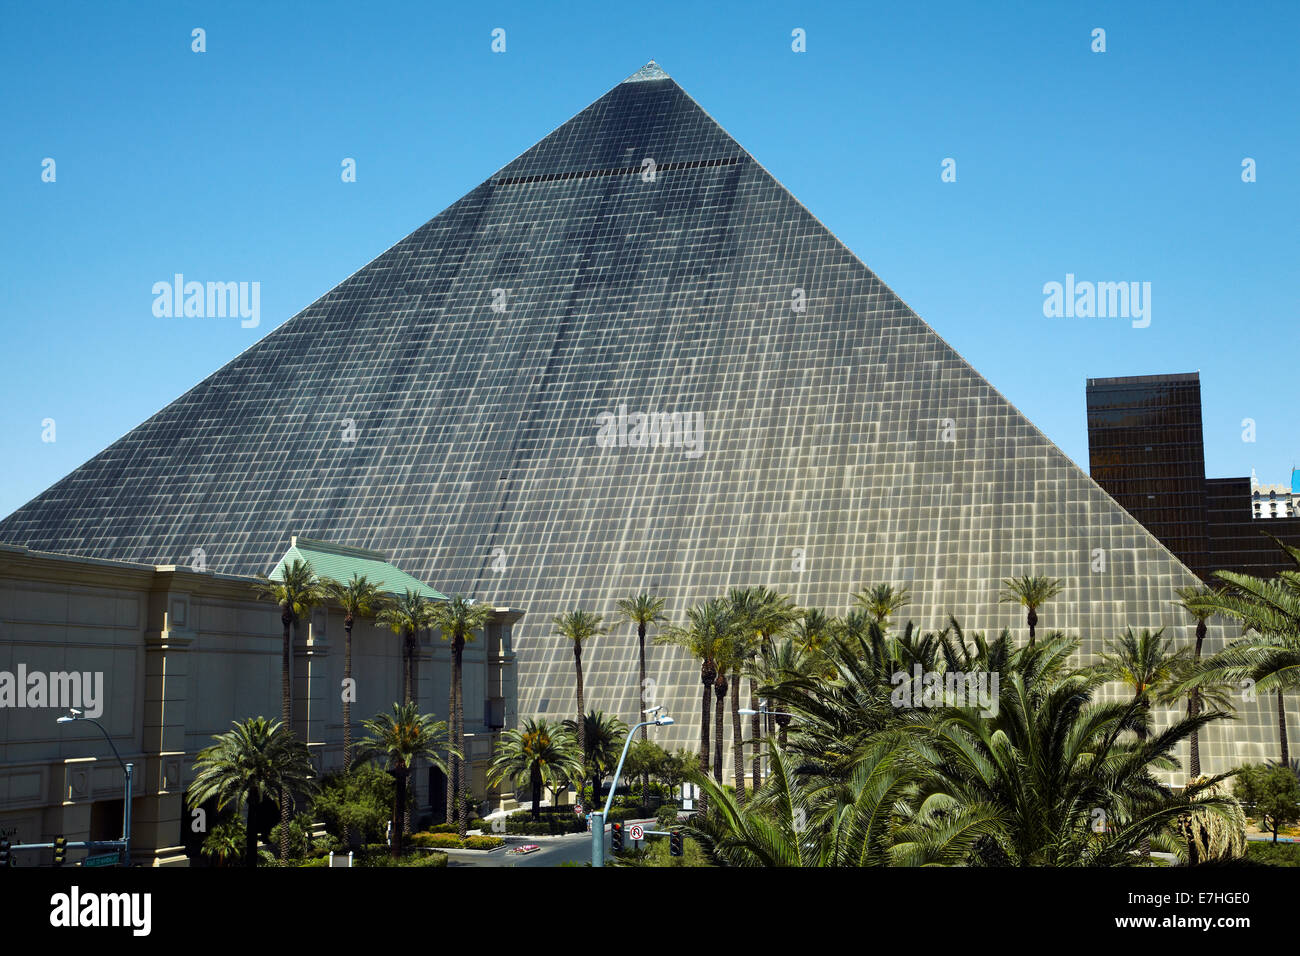 Piramide a Luxor Hotel e Casinò di Las Vegas, Nevada, STATI UNITI D'AMERICA Foto Stock